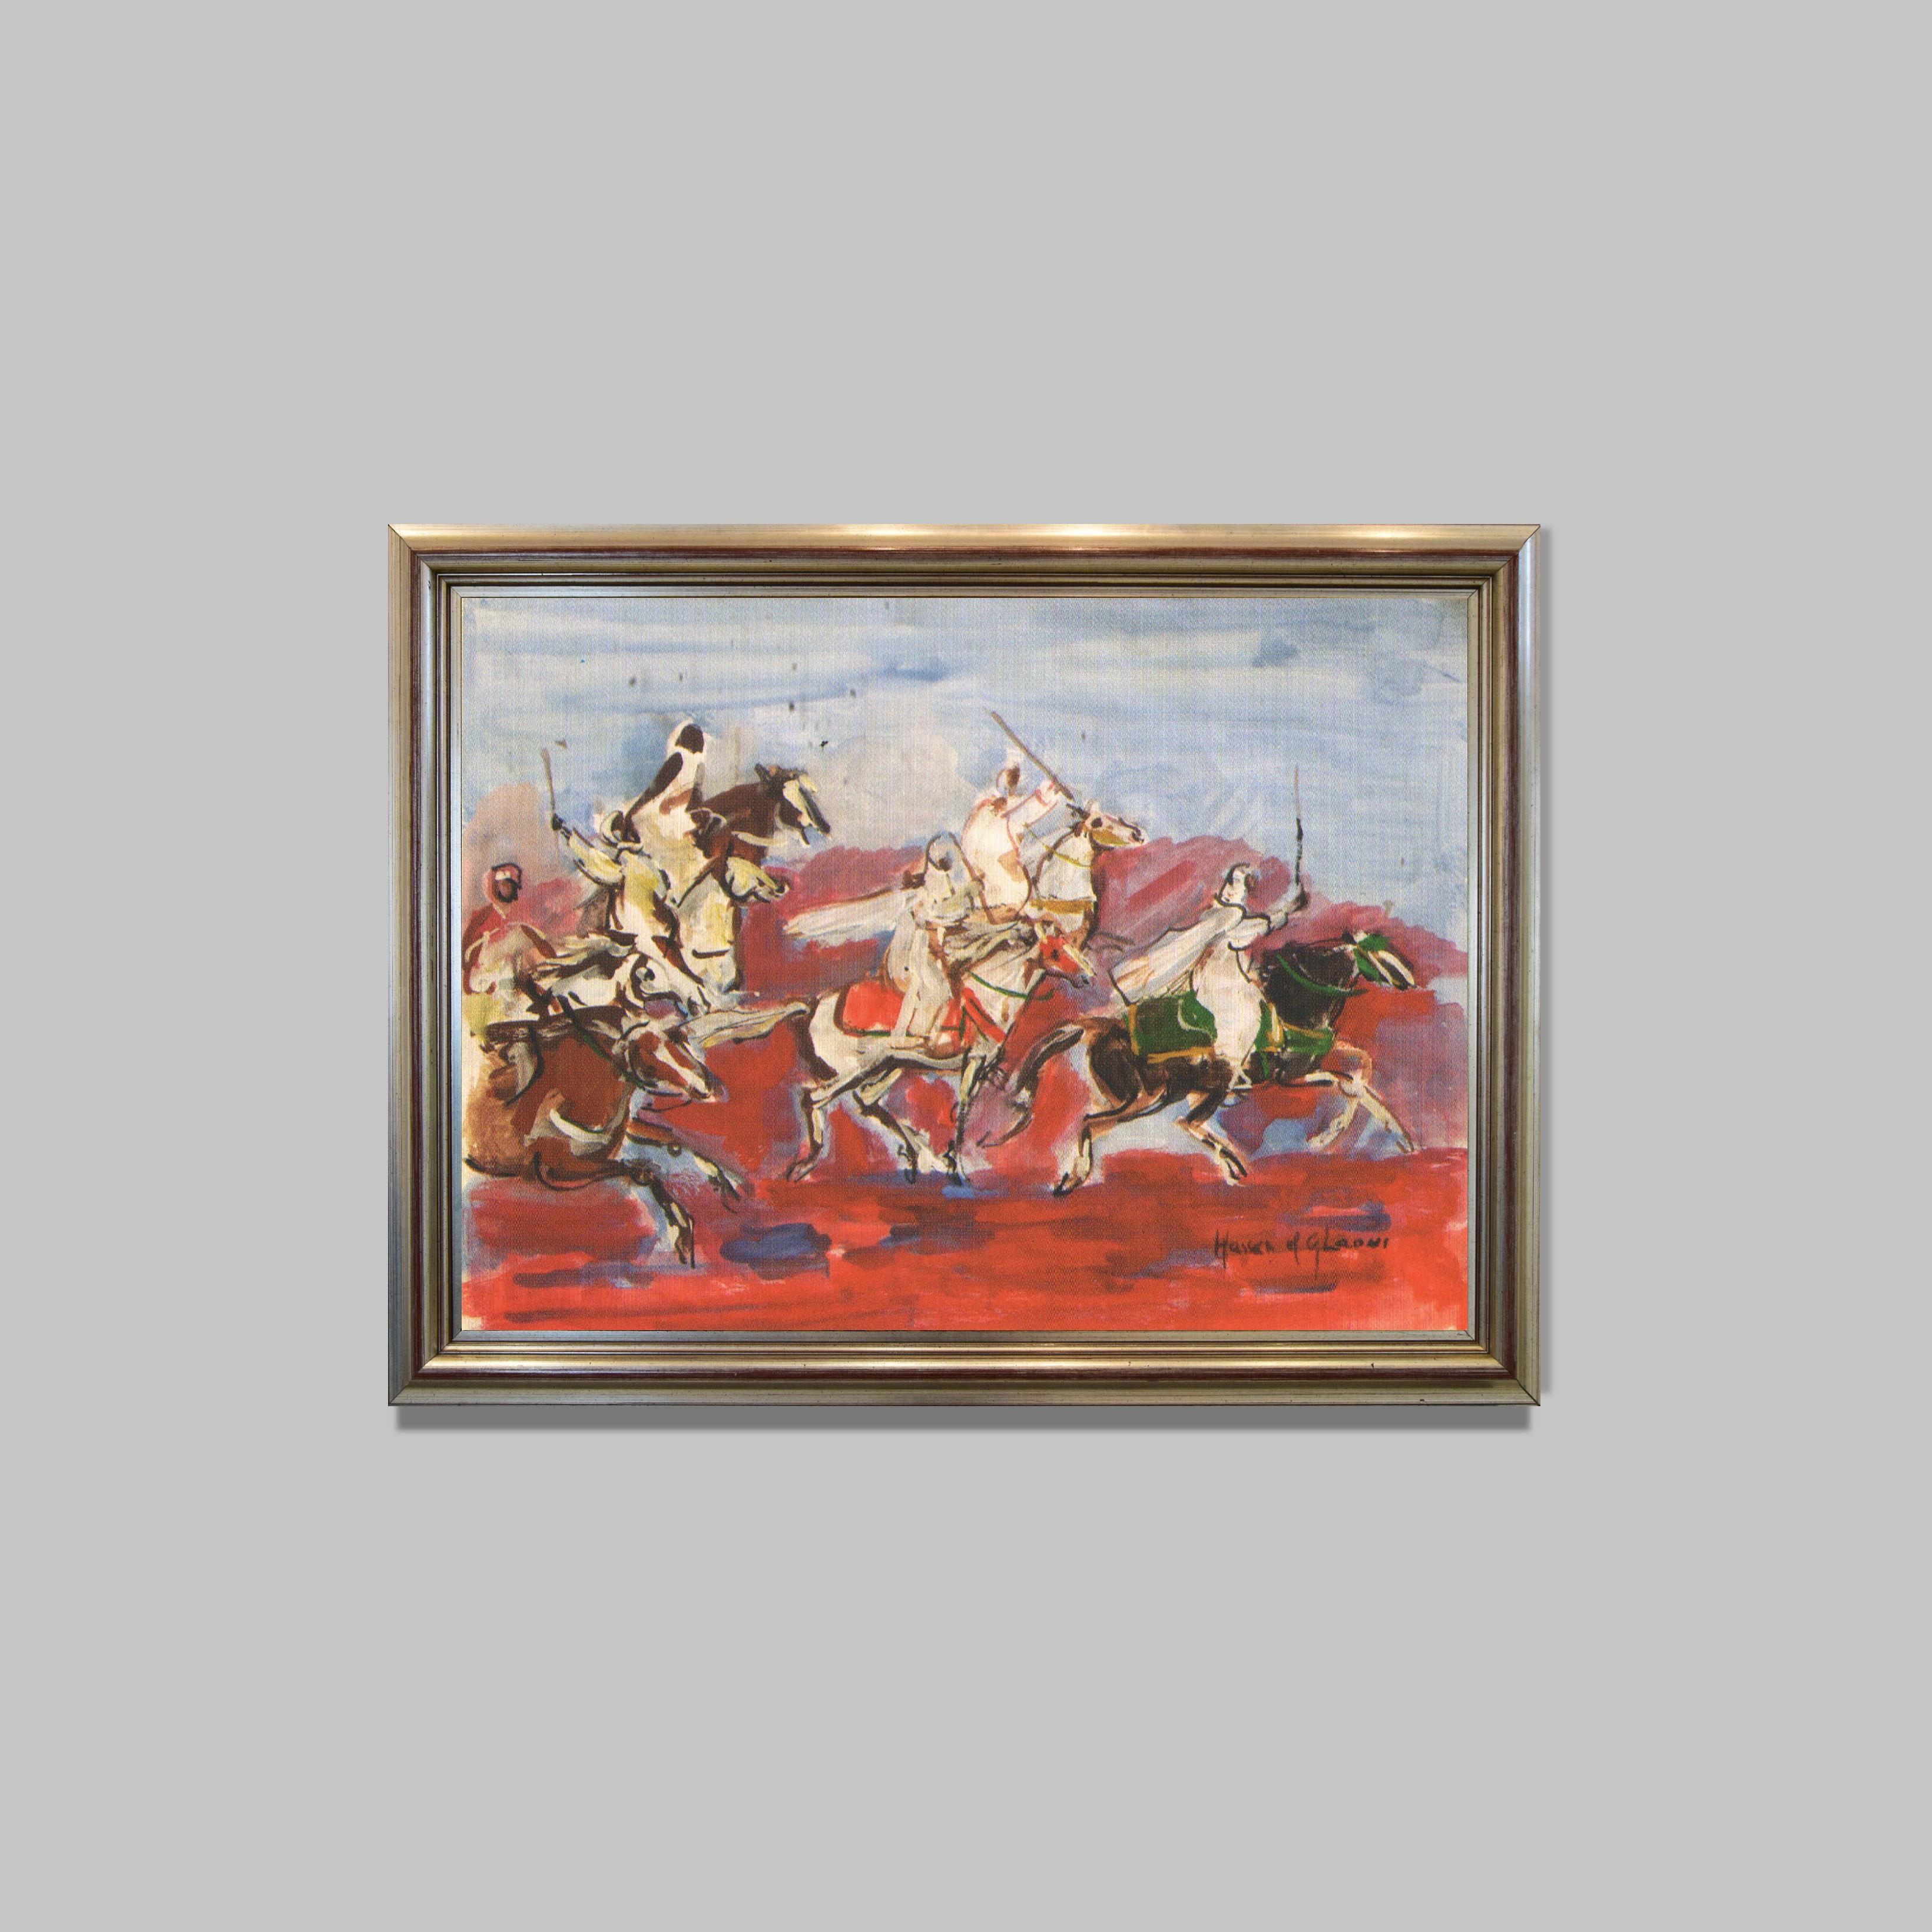 Chevaux au galop
Peinture sur isorel 
63 x 48 cm